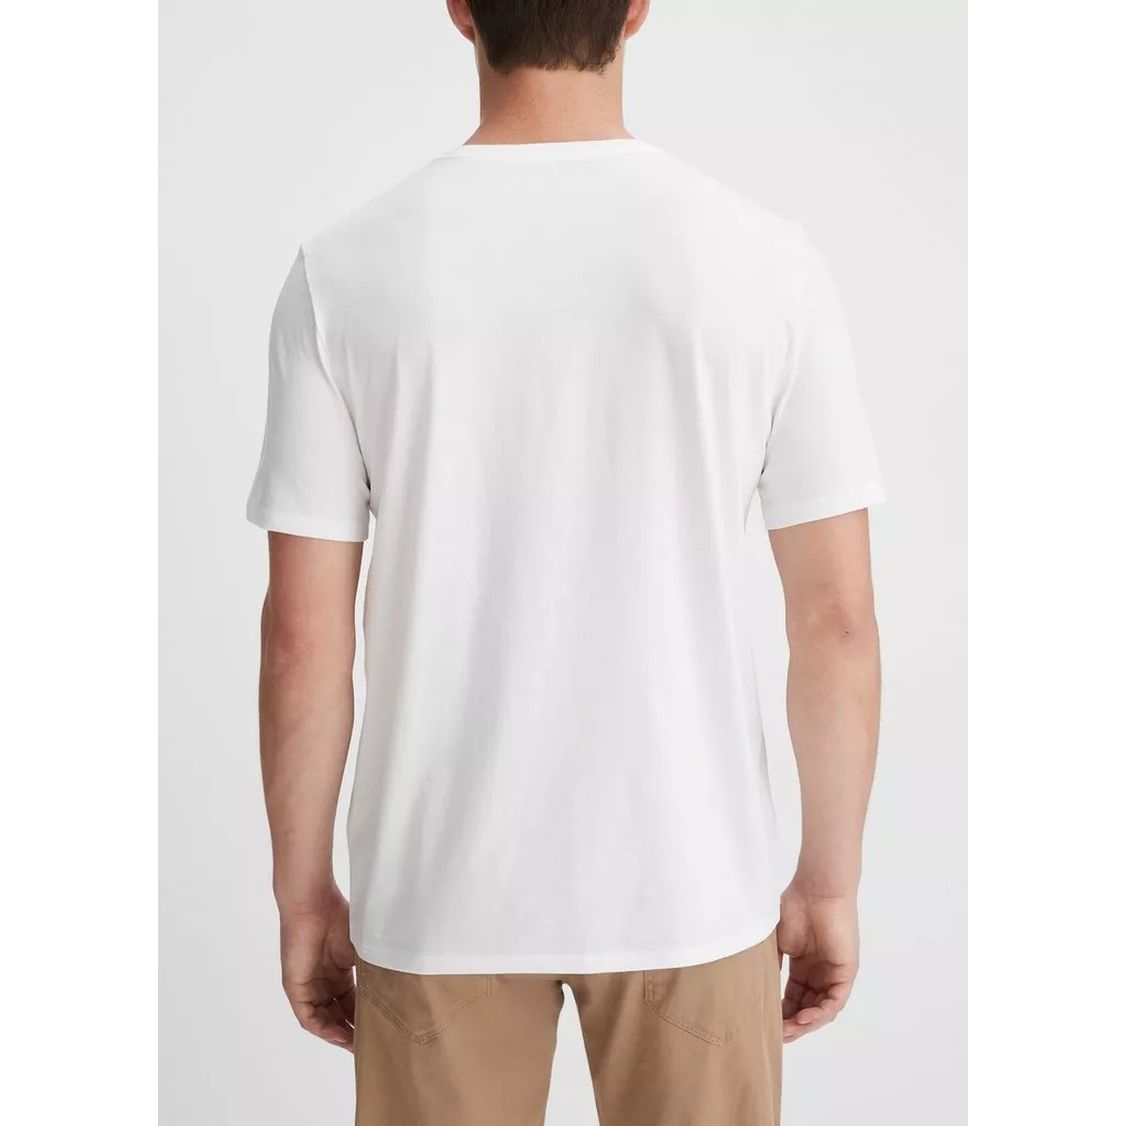 VINCE vyriški balti marškinėliai trumpomis rankovėmis Crew neck t-shirt